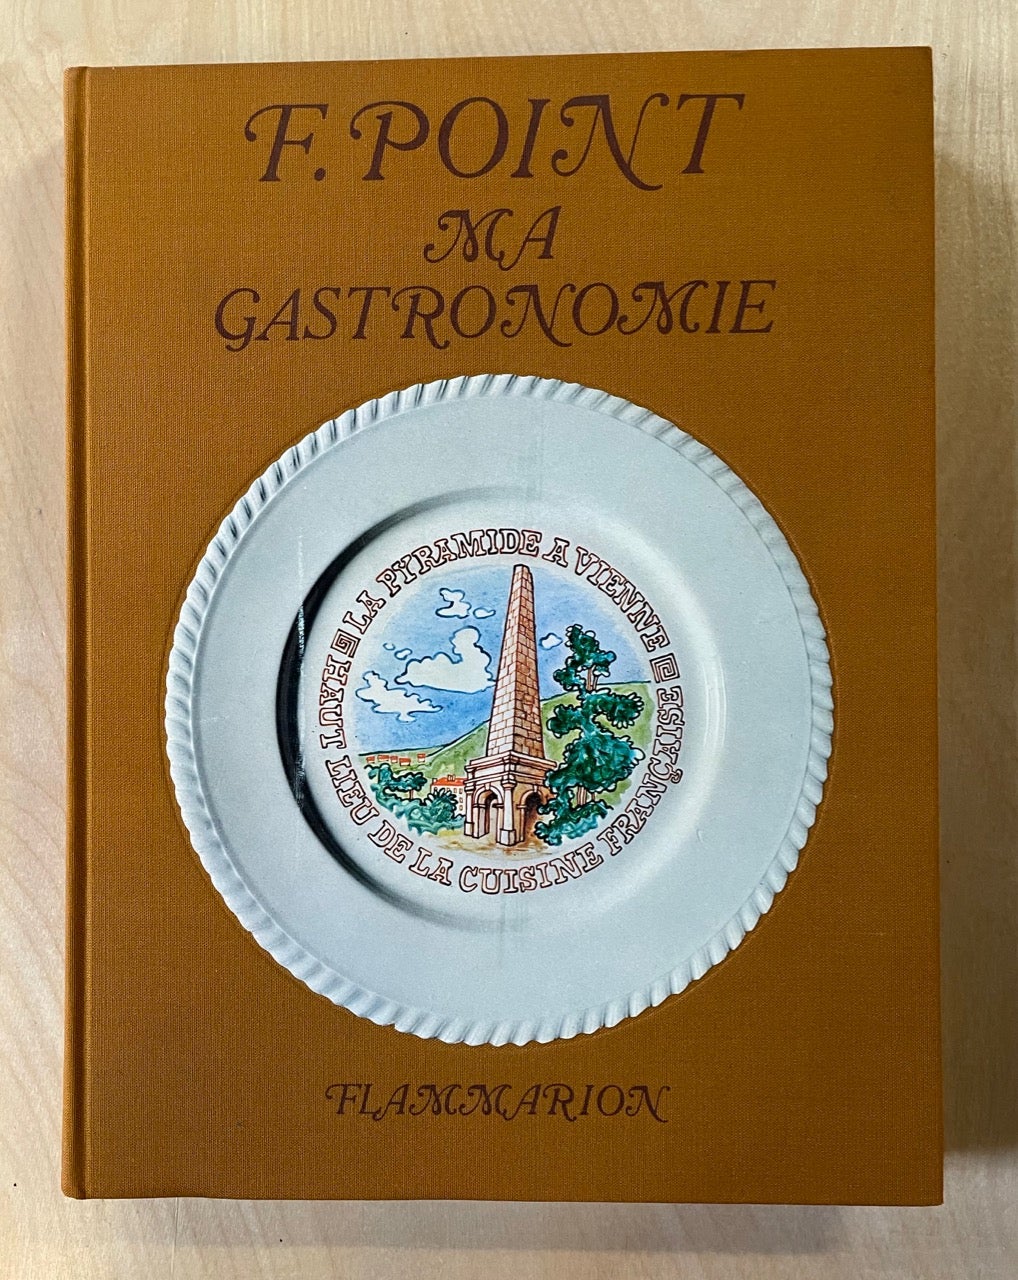 Item #3446 Ma Gastronomie. Introduction et presentation de Felix Benoit. Neuf compositions de Dunoyer de Segoznac. Point, ernand, Fernand Point.